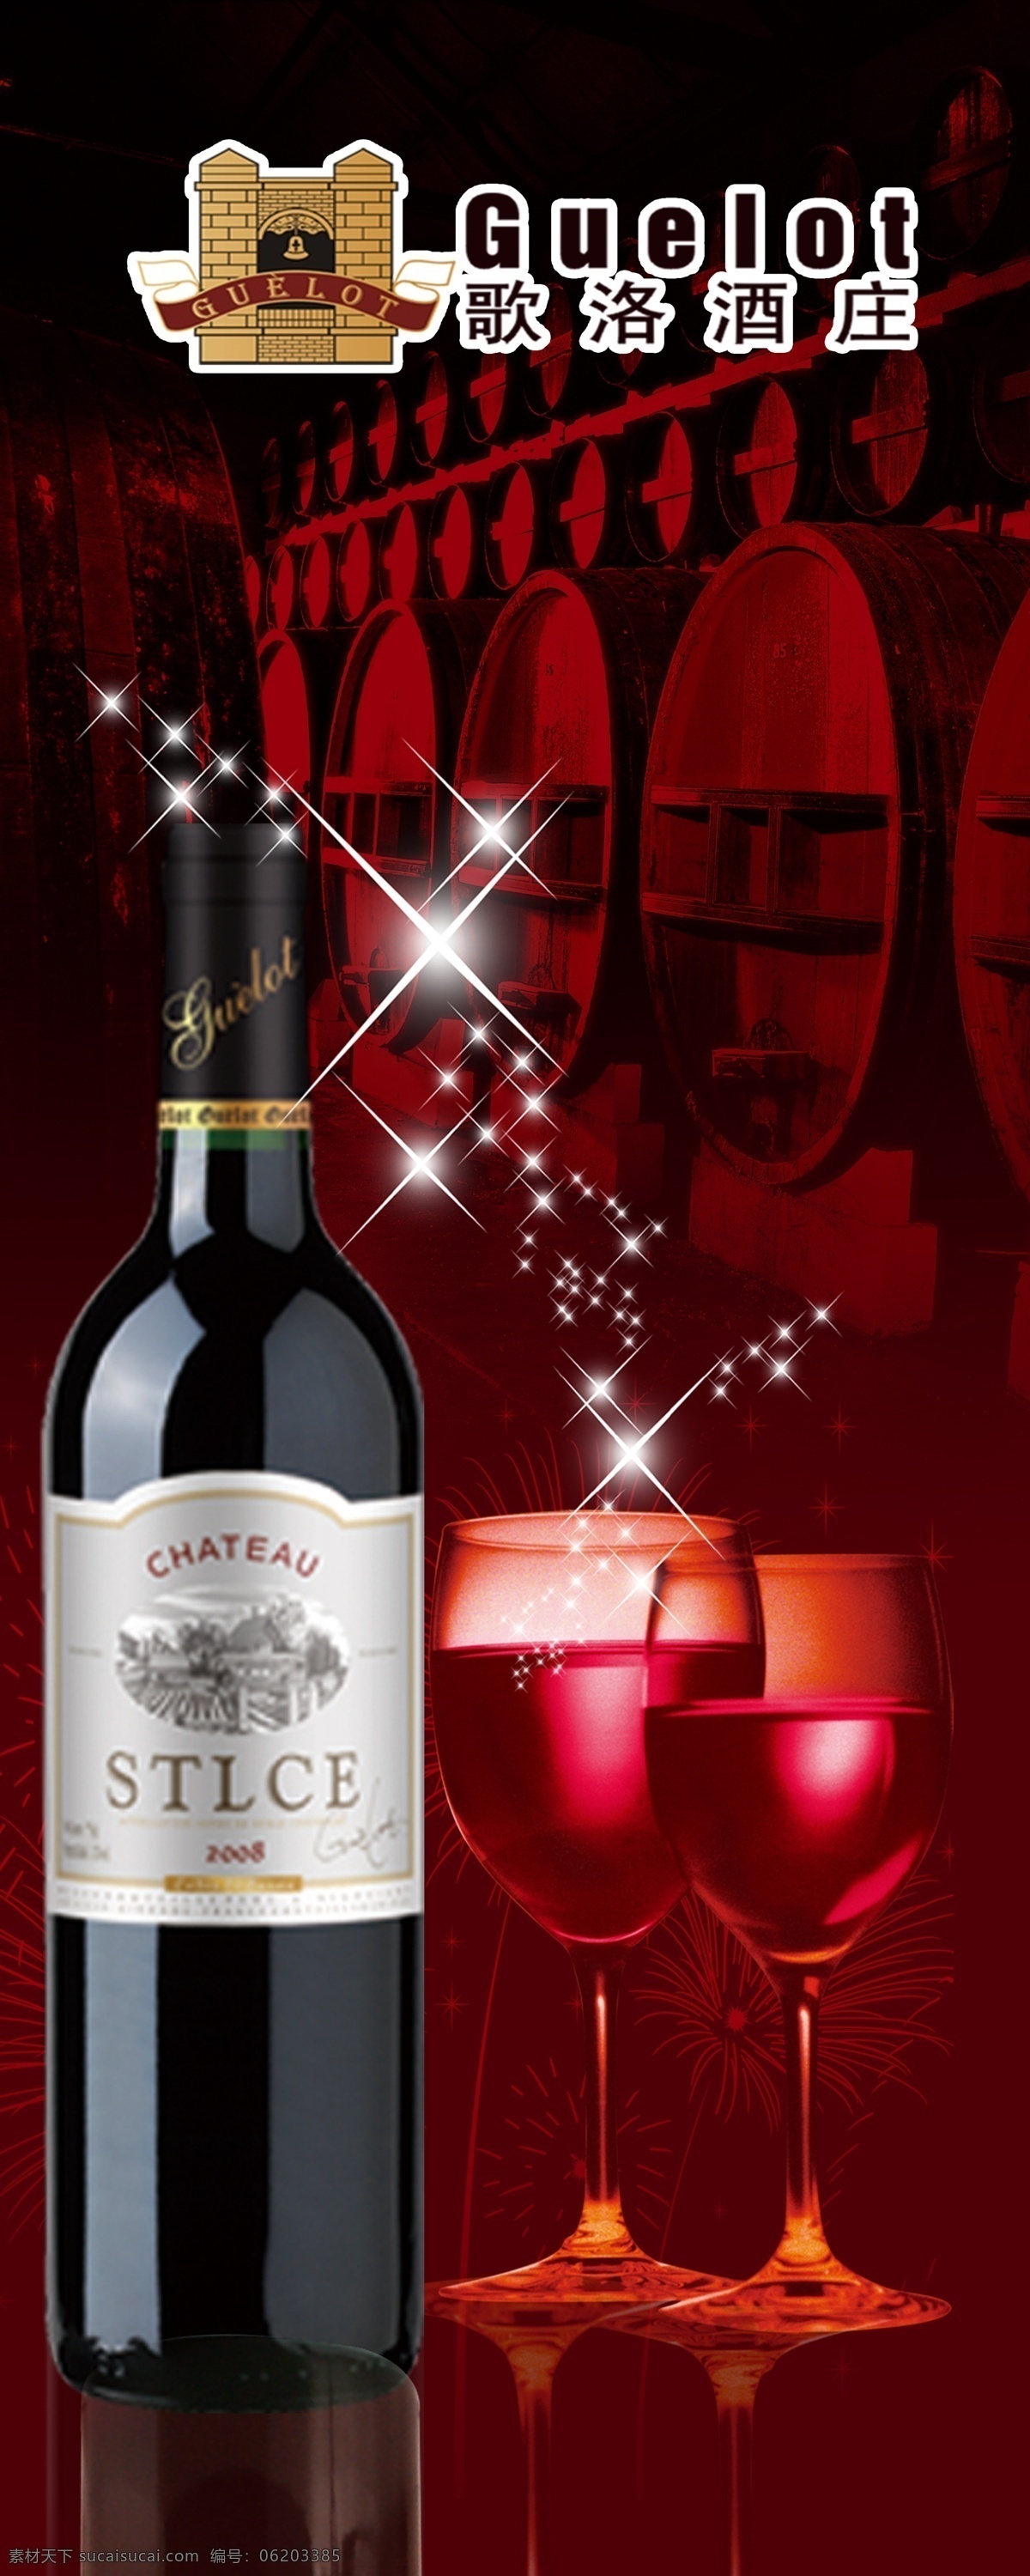 红酒 宣传 酒品 高档 高档红酒 酒品酒类 宣传画面 玻璃杯 酒庄